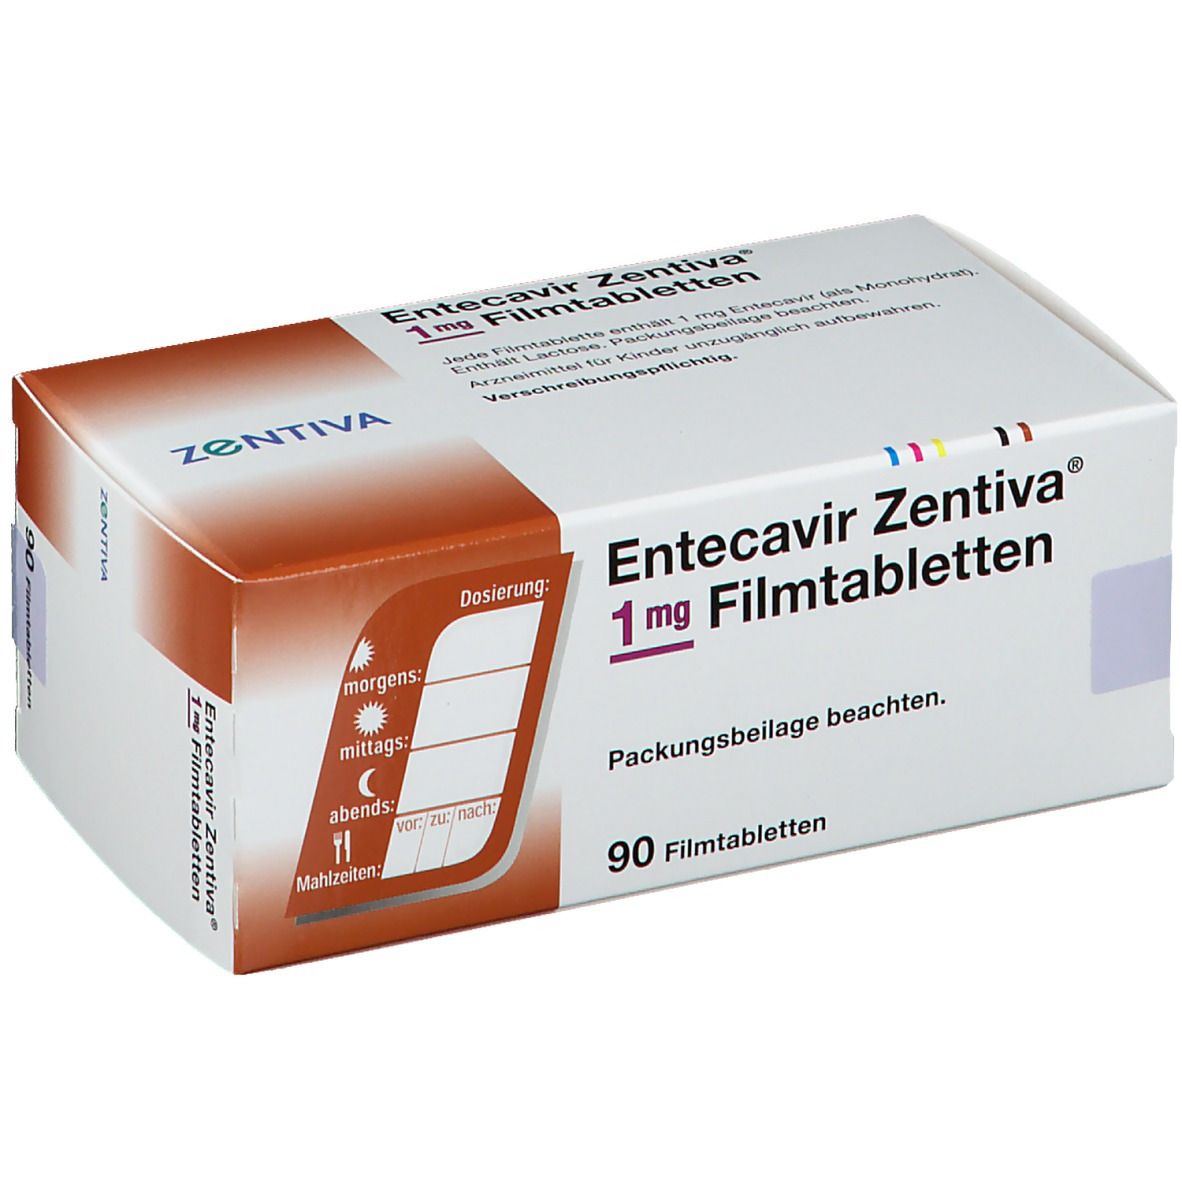 Entecavir Zentiva® 1 mg